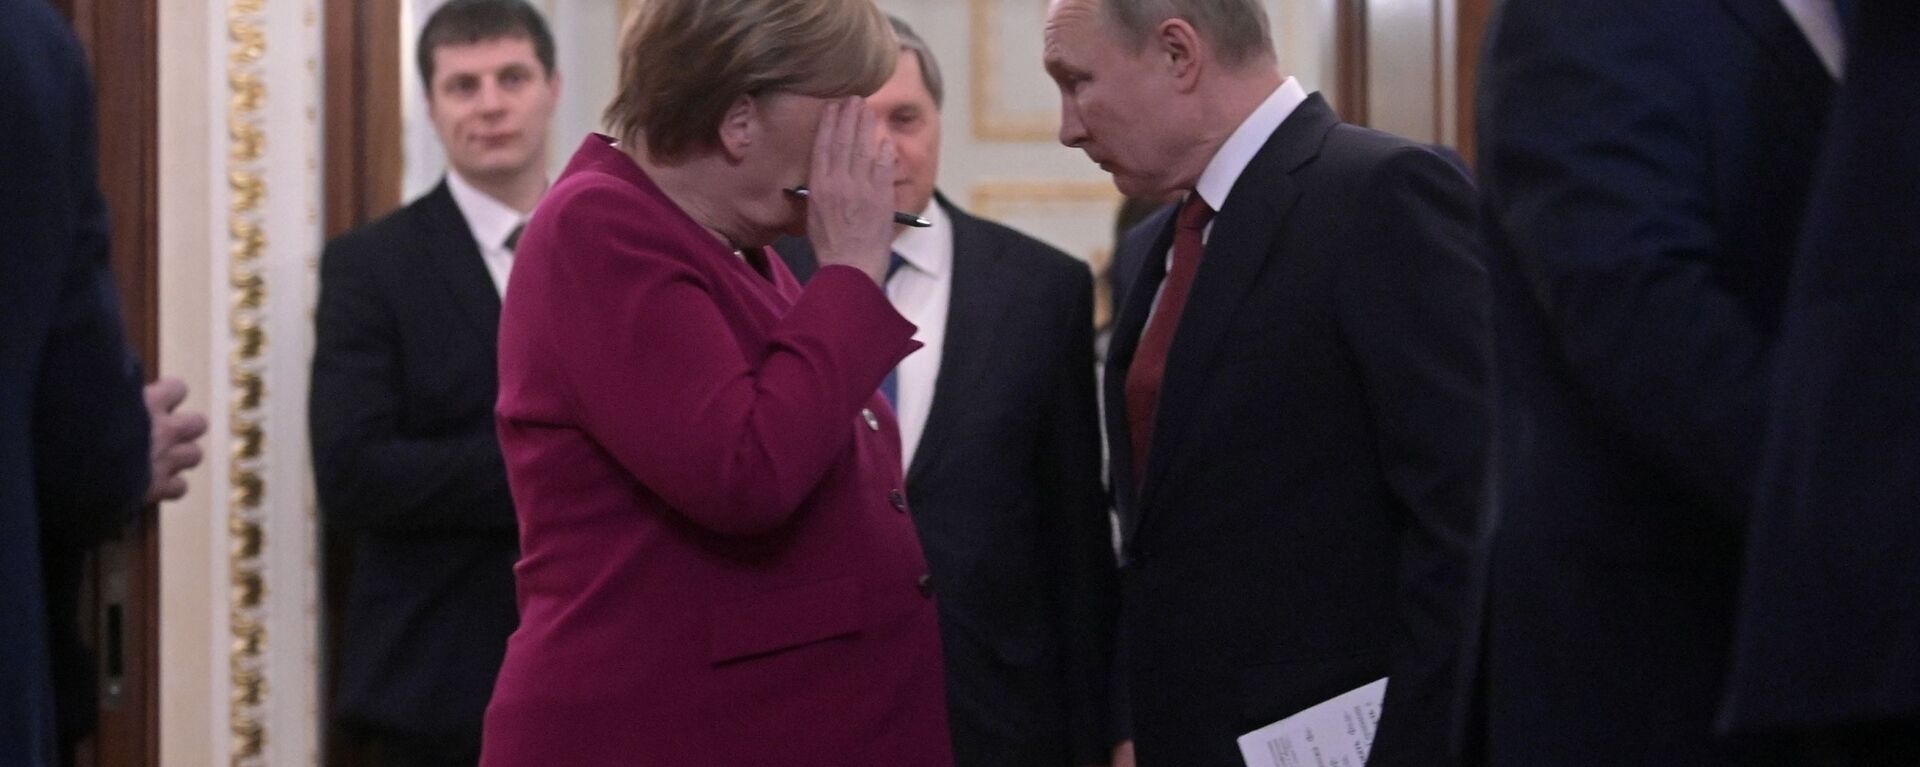 Ruski predsednik Vladimir Putin i nemačka kancelarka Angela Merkel - Sputnik Srbija, 1920, 22.06.2021